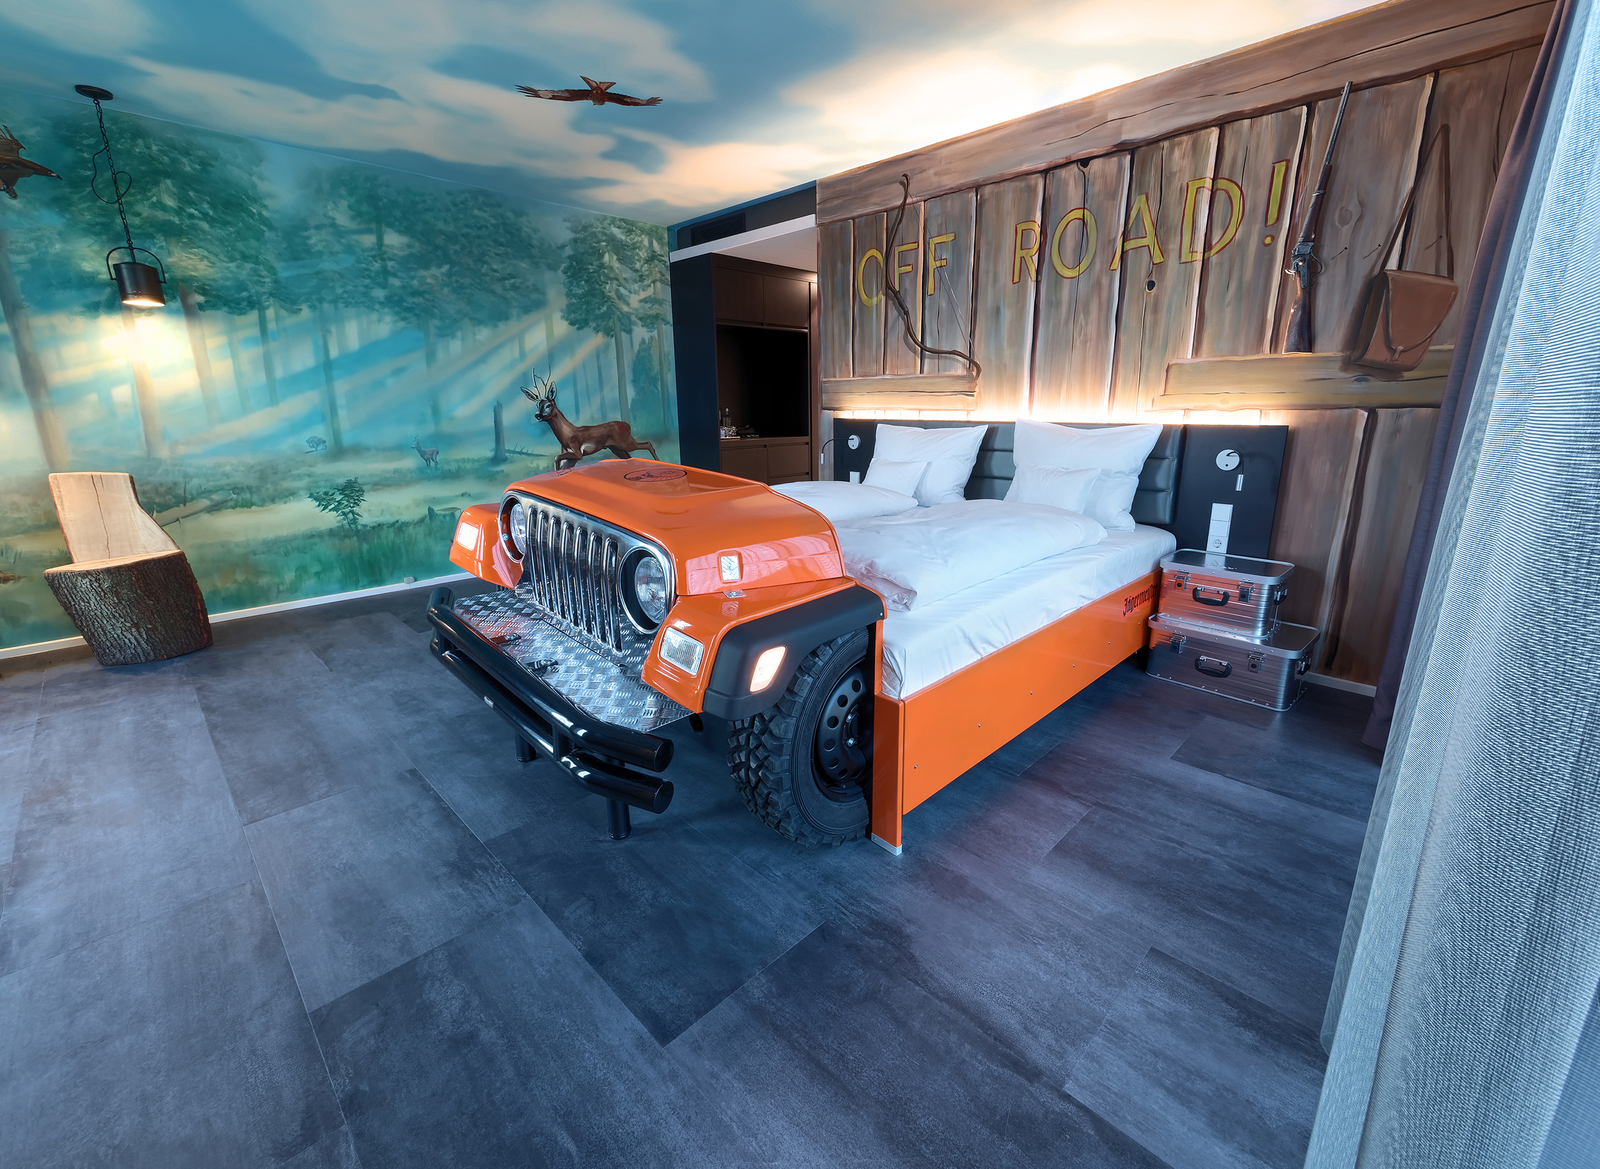 Orangefarbenes Autobett im Off road Autozimmer im V8 Hotel mit bemalten Wänden im Holz- und Walddesign.